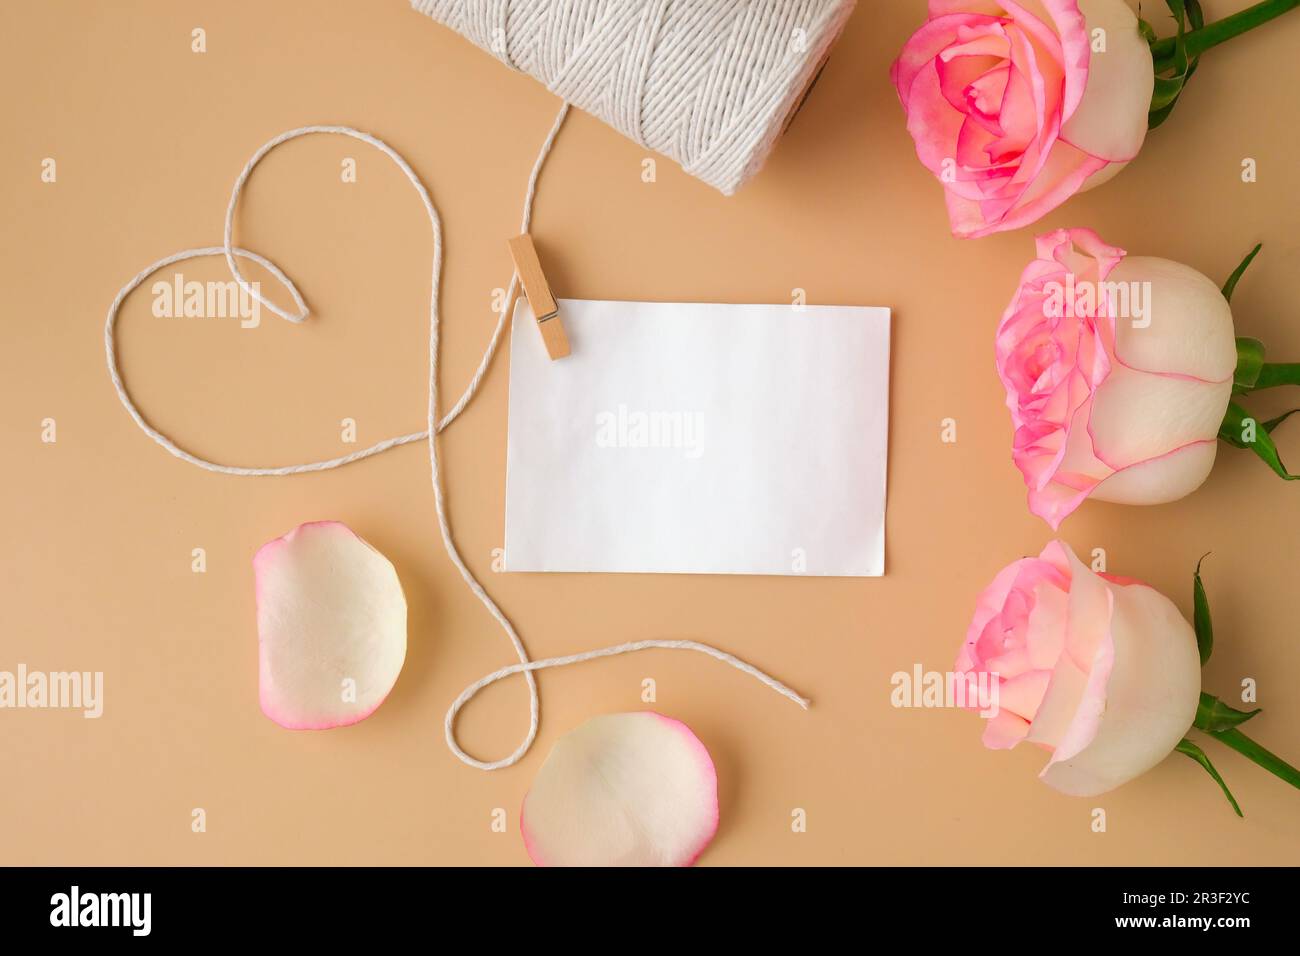 Rosa rosa tenue con rocchetto di corda di cotone bianco a forma di cuore su fondo beige. Vuoto carta nota copia spazio minimo trendy Foto Stock